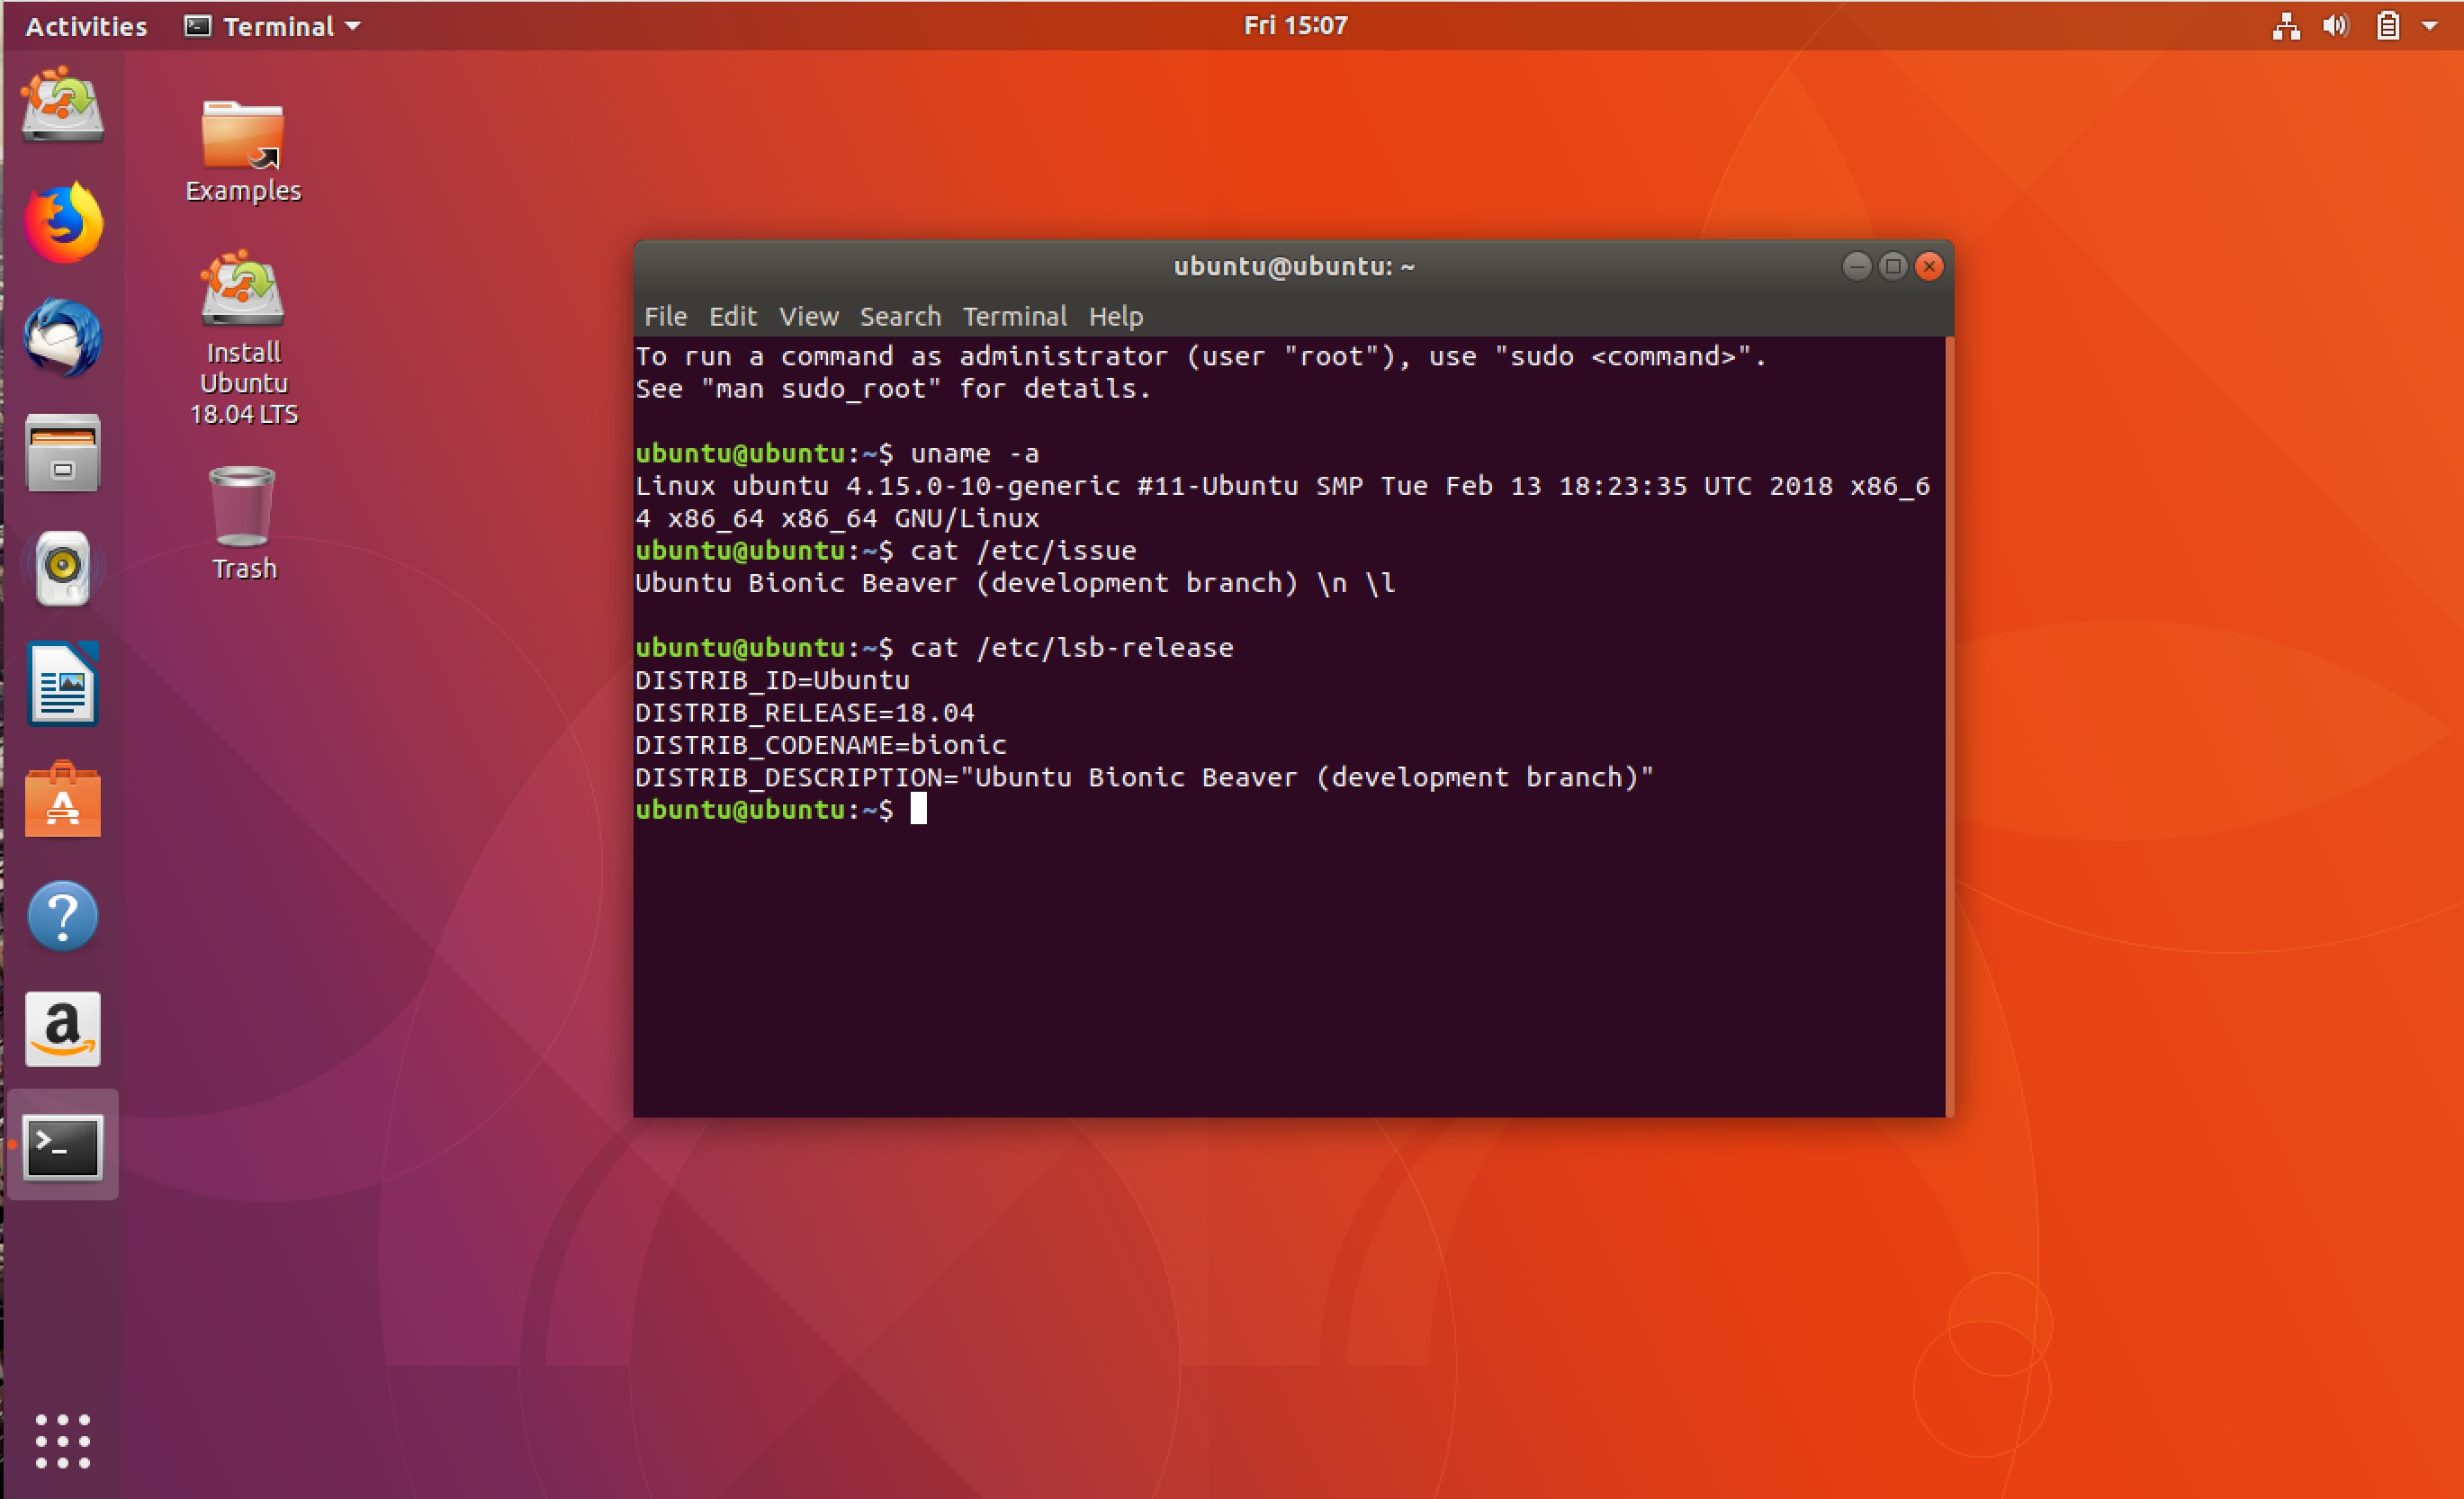 vuescan ubuntu 20.04